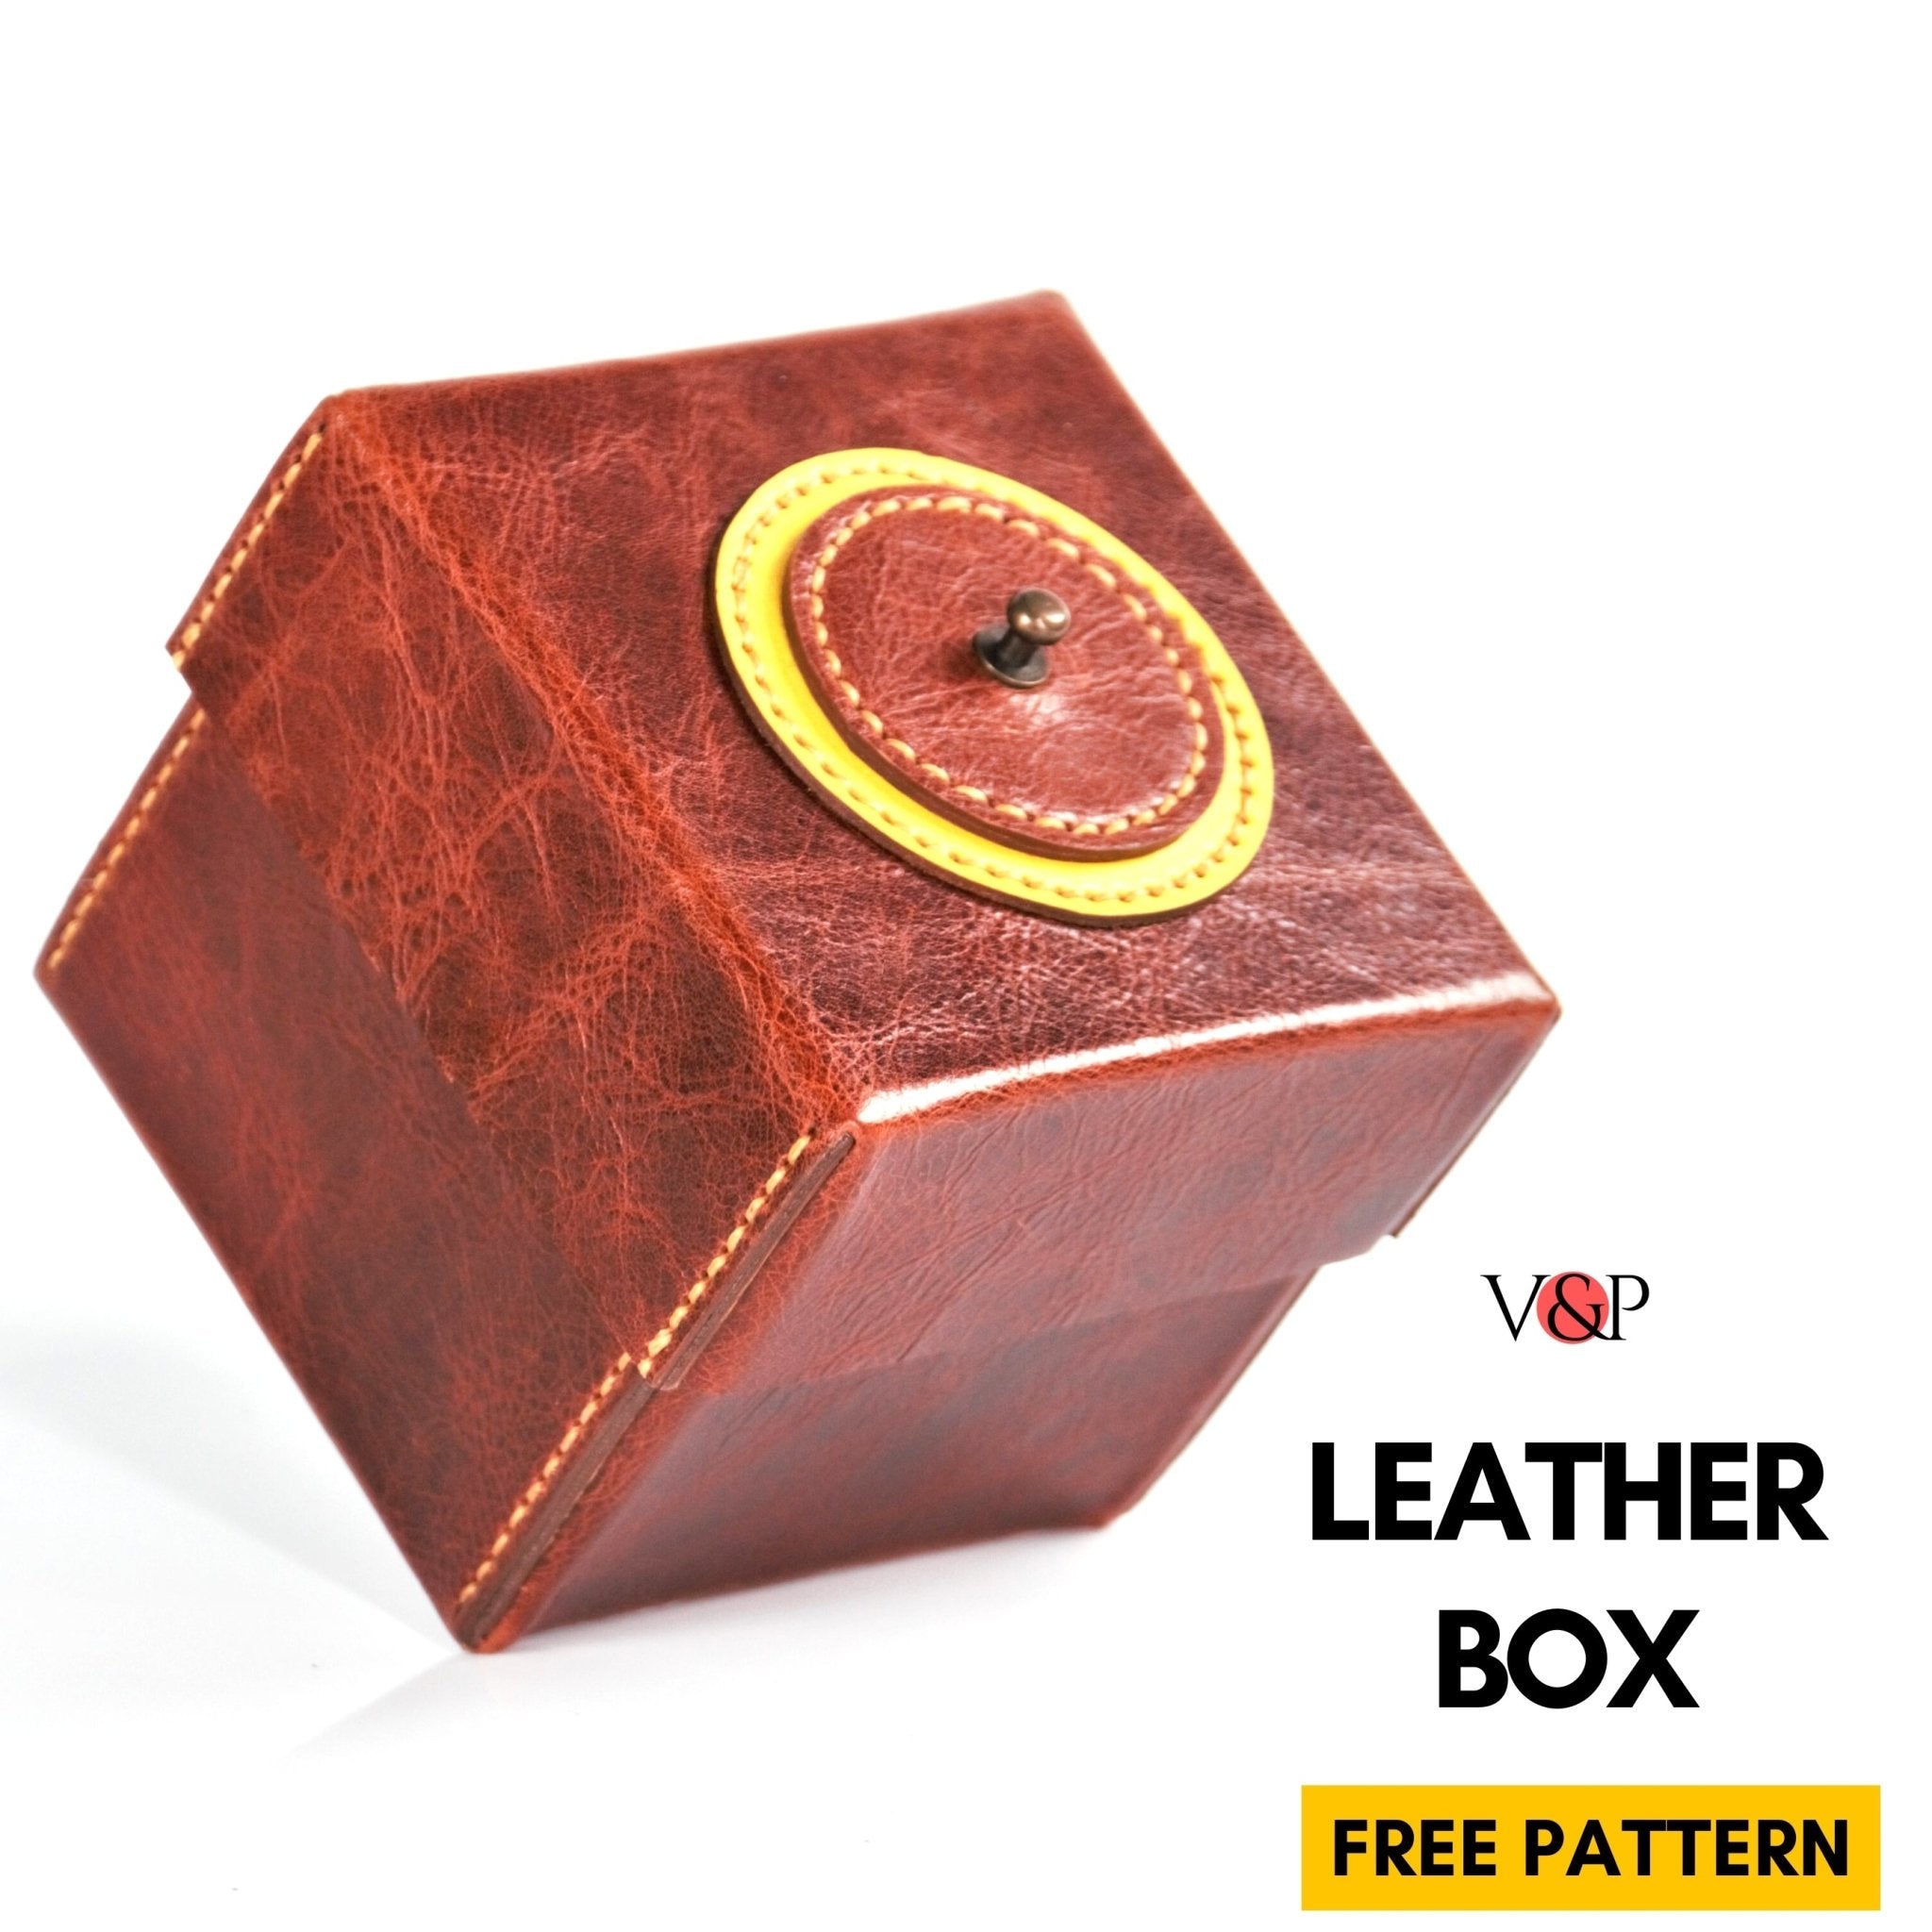 FREE PDF Pattern Leather Box, Instructional Video by Vasile and Pavel - Vasile and Pavel Leather Patterns